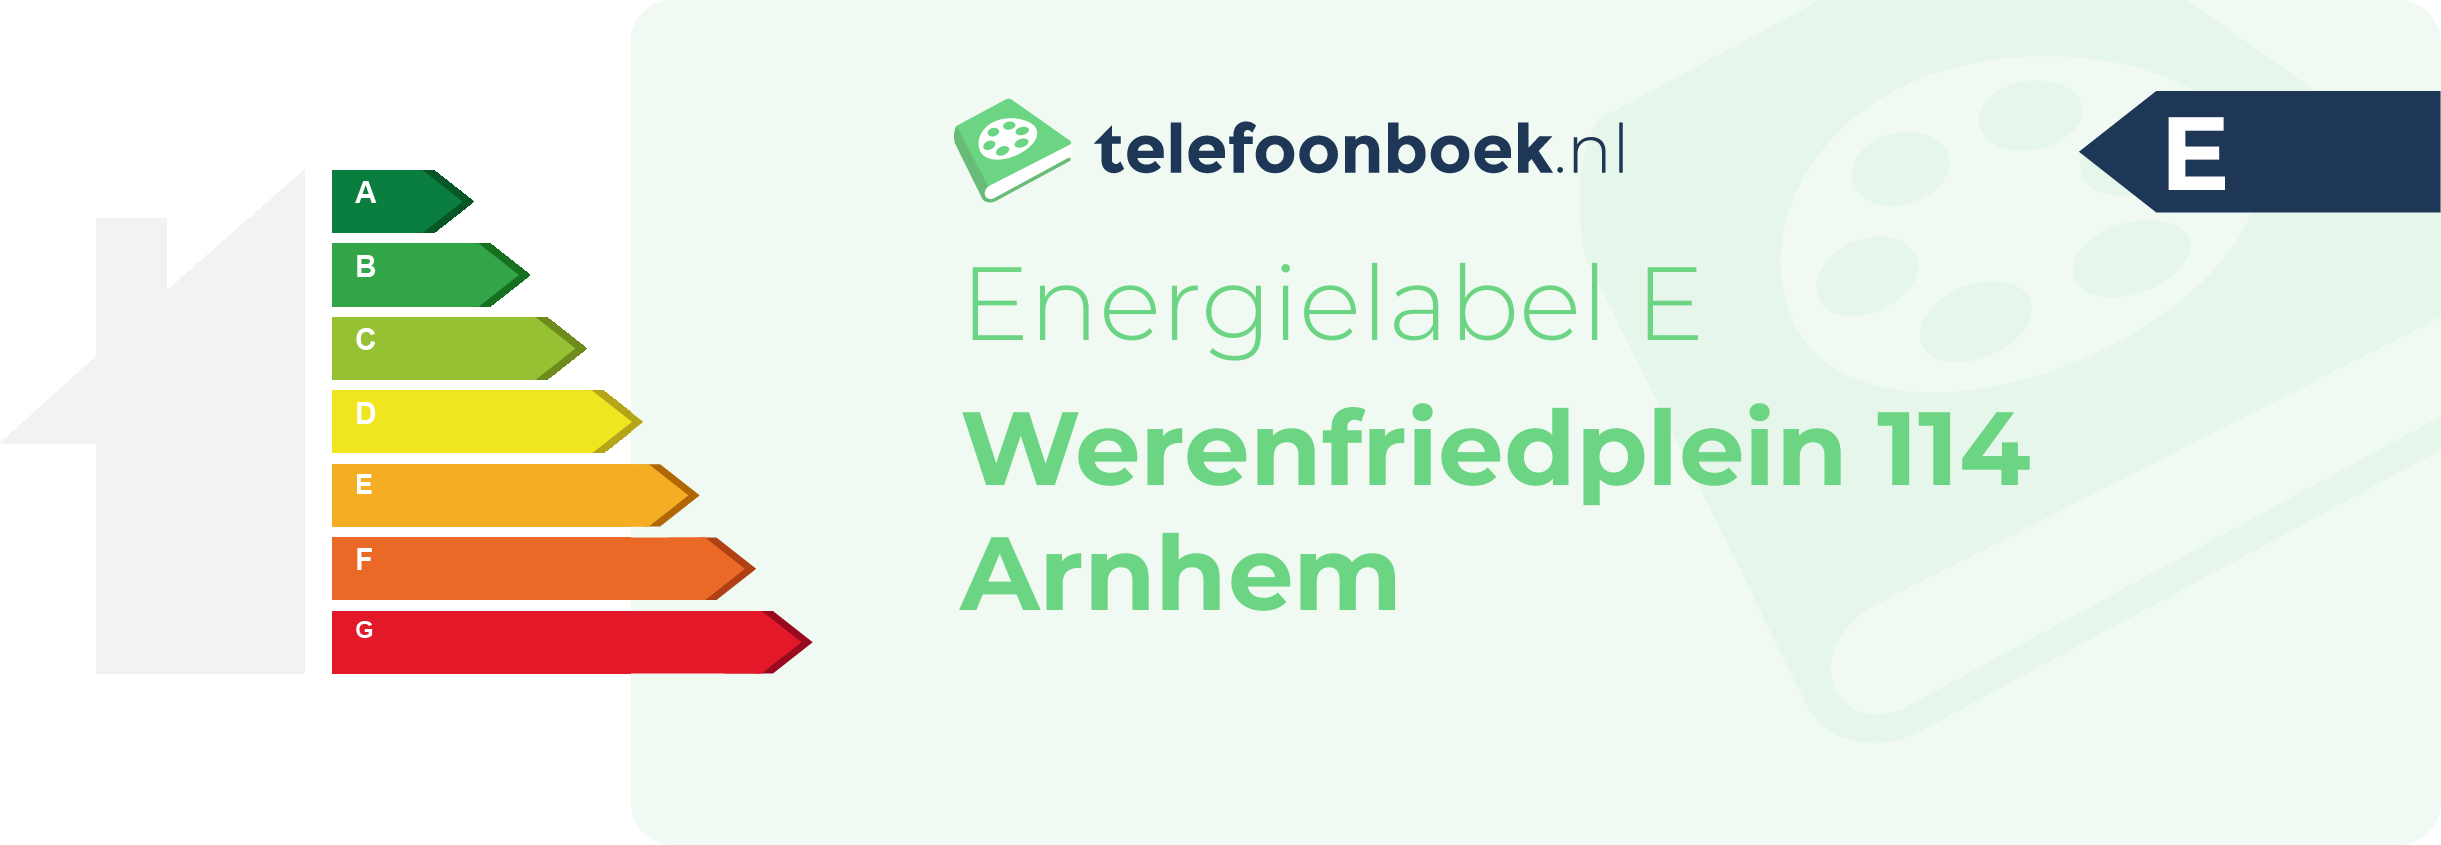 Energielabel Werenfriedplein 114 Arnhem